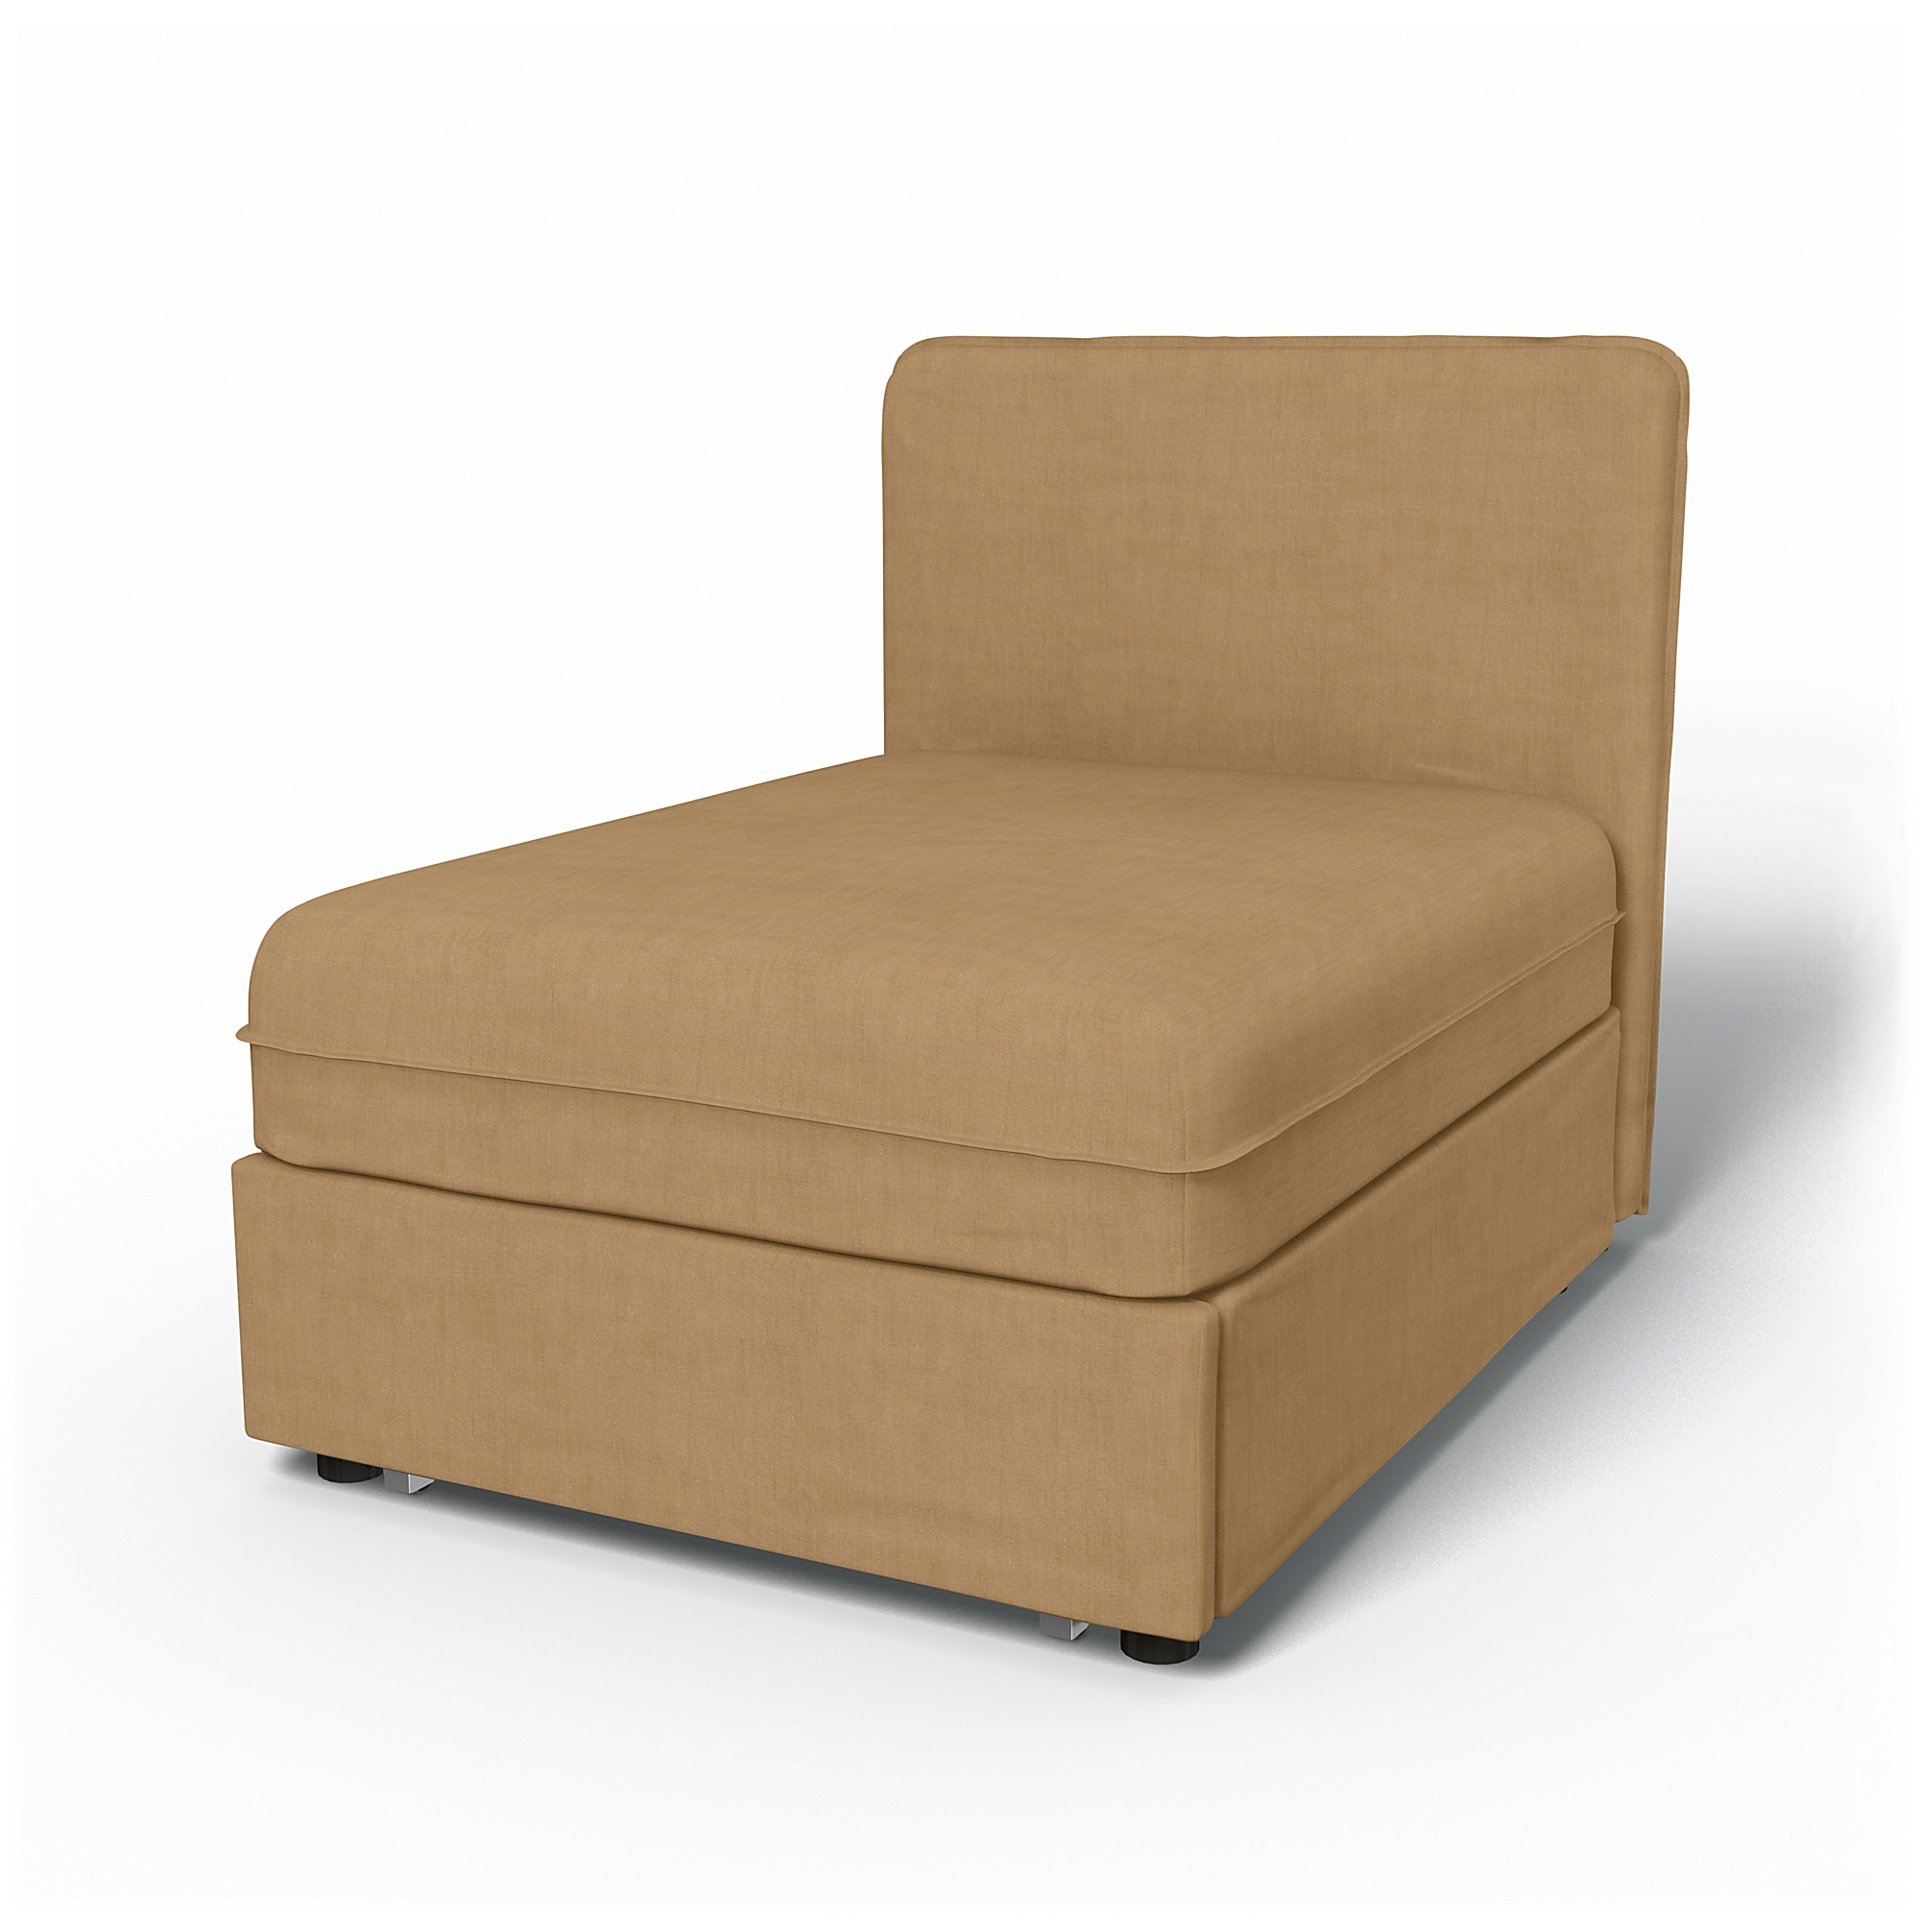 IKEA - Vallentuna Seat Module with Low Back Sofa Bed Cover 80x100 cm 32x39in, Hemp, Linen - Bemz